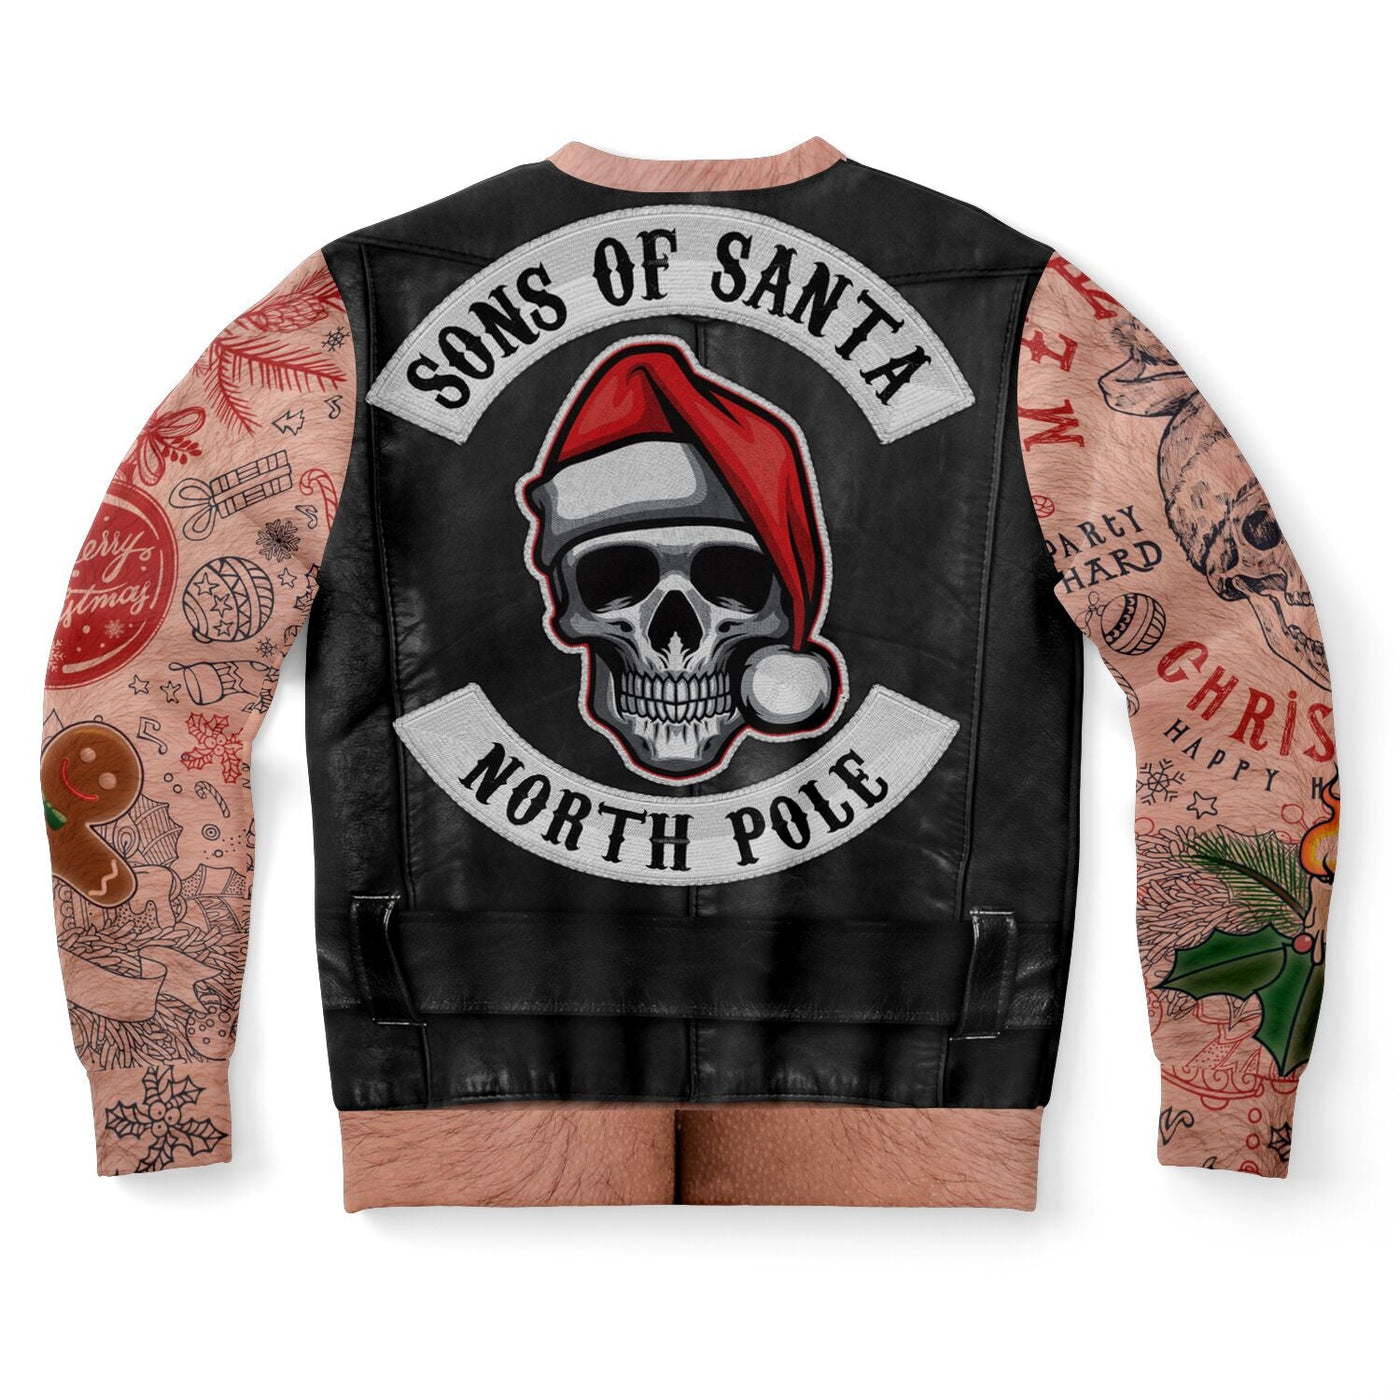 Santa Claus Motorcycle Vest | Ugly Xmas Sweatshirt